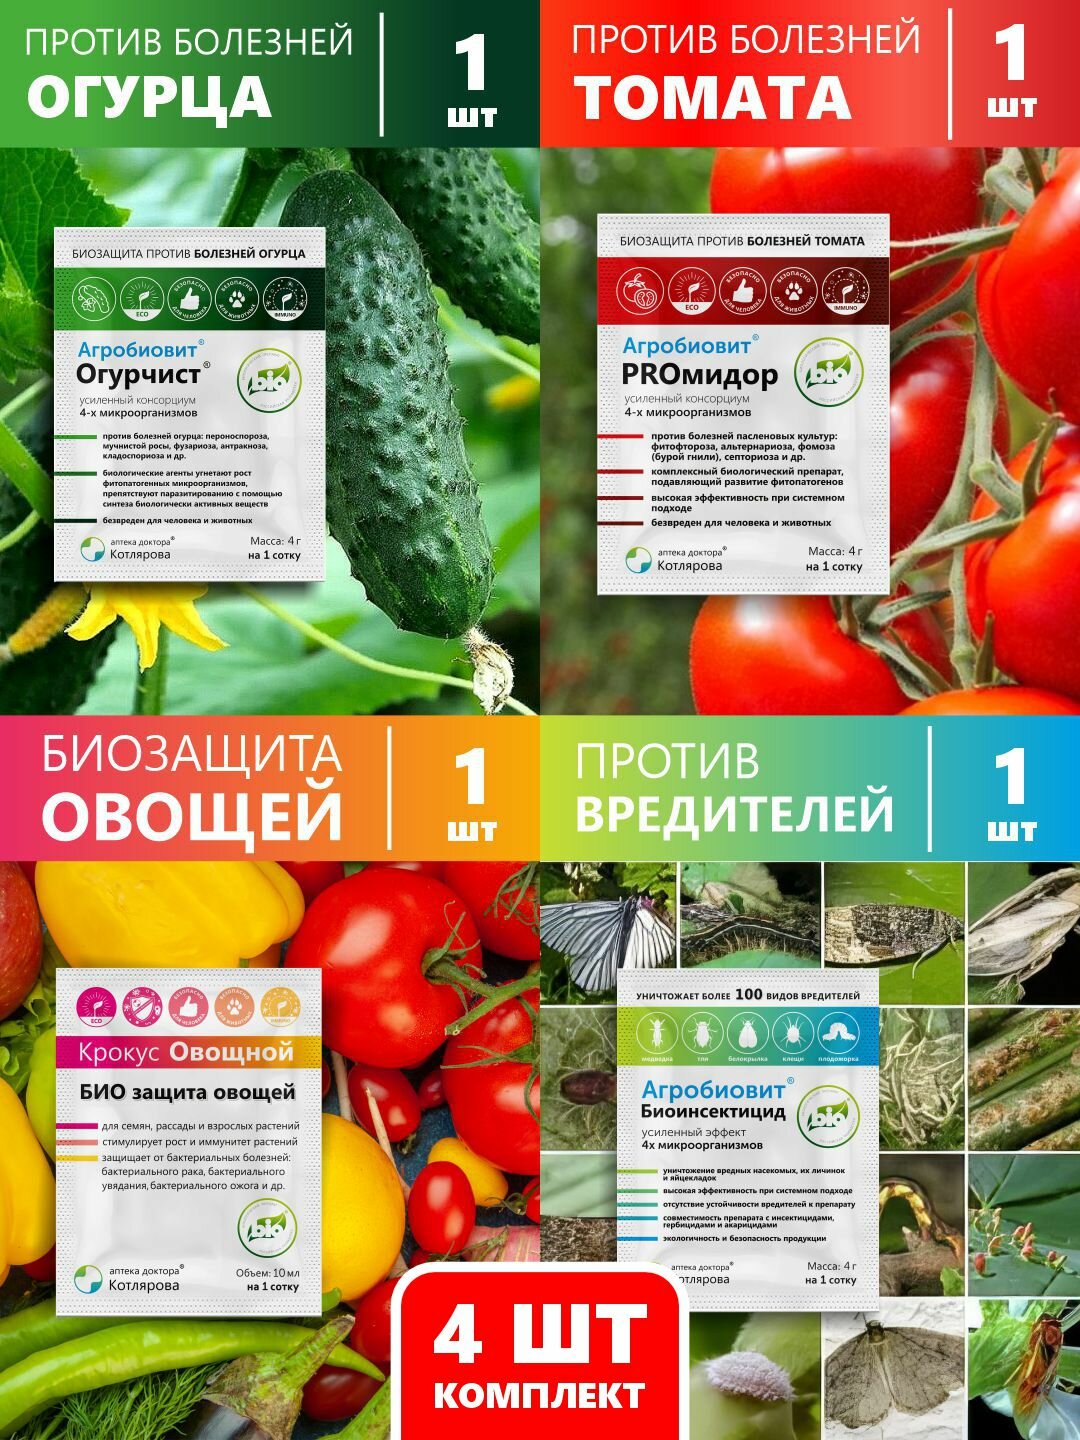 Комплекс для томатов и огурцов: защита от болезней и насекомых и стимуляция роста, 1 комплект.